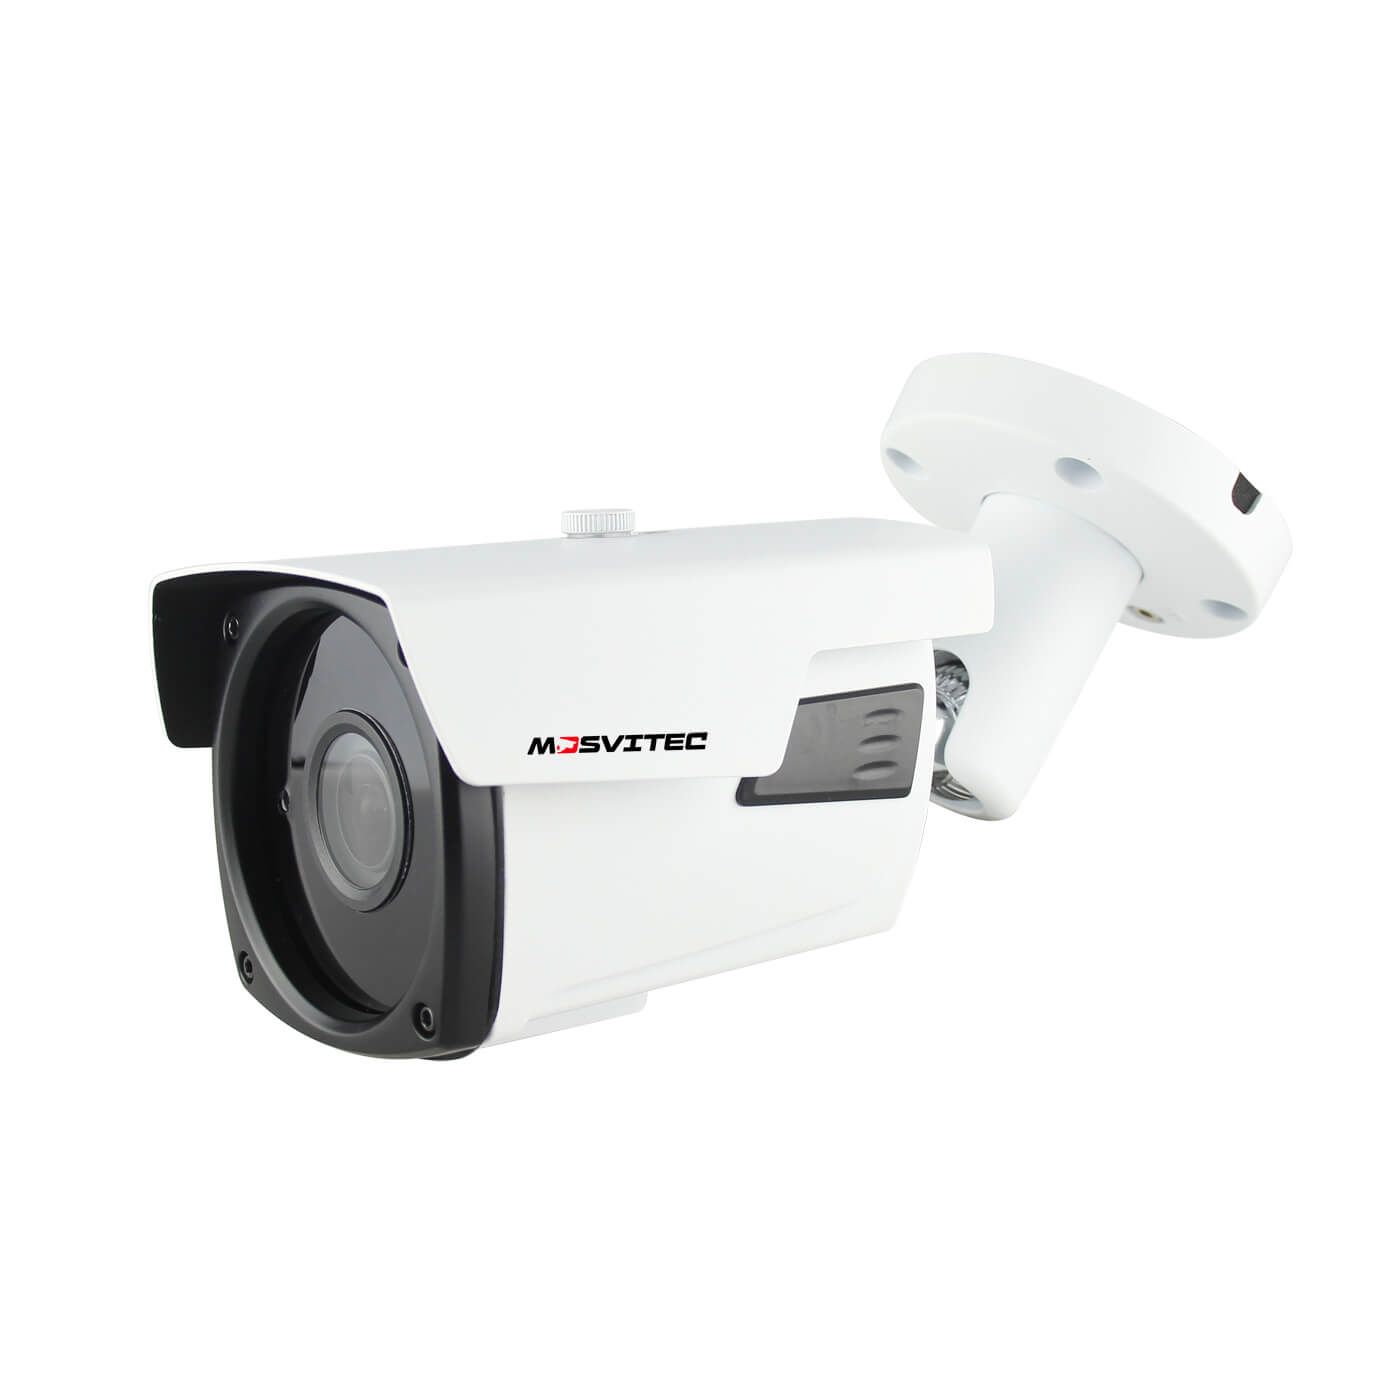 IP комплект видеонаблюдения на 6 камеры 5 Мегапикселей PRO